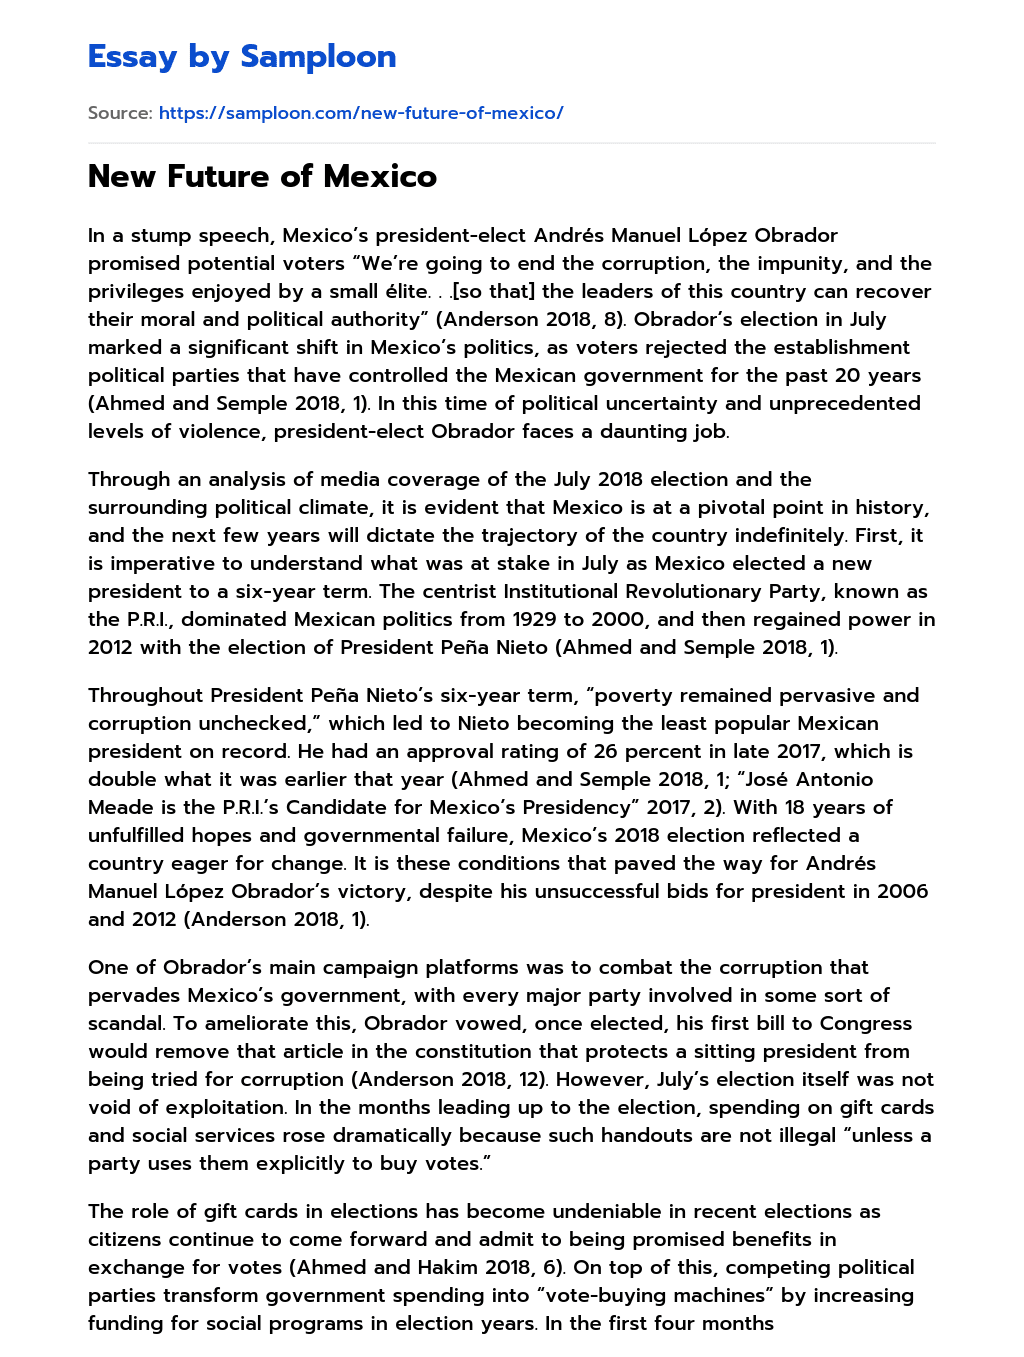 New Future of Mexico essay